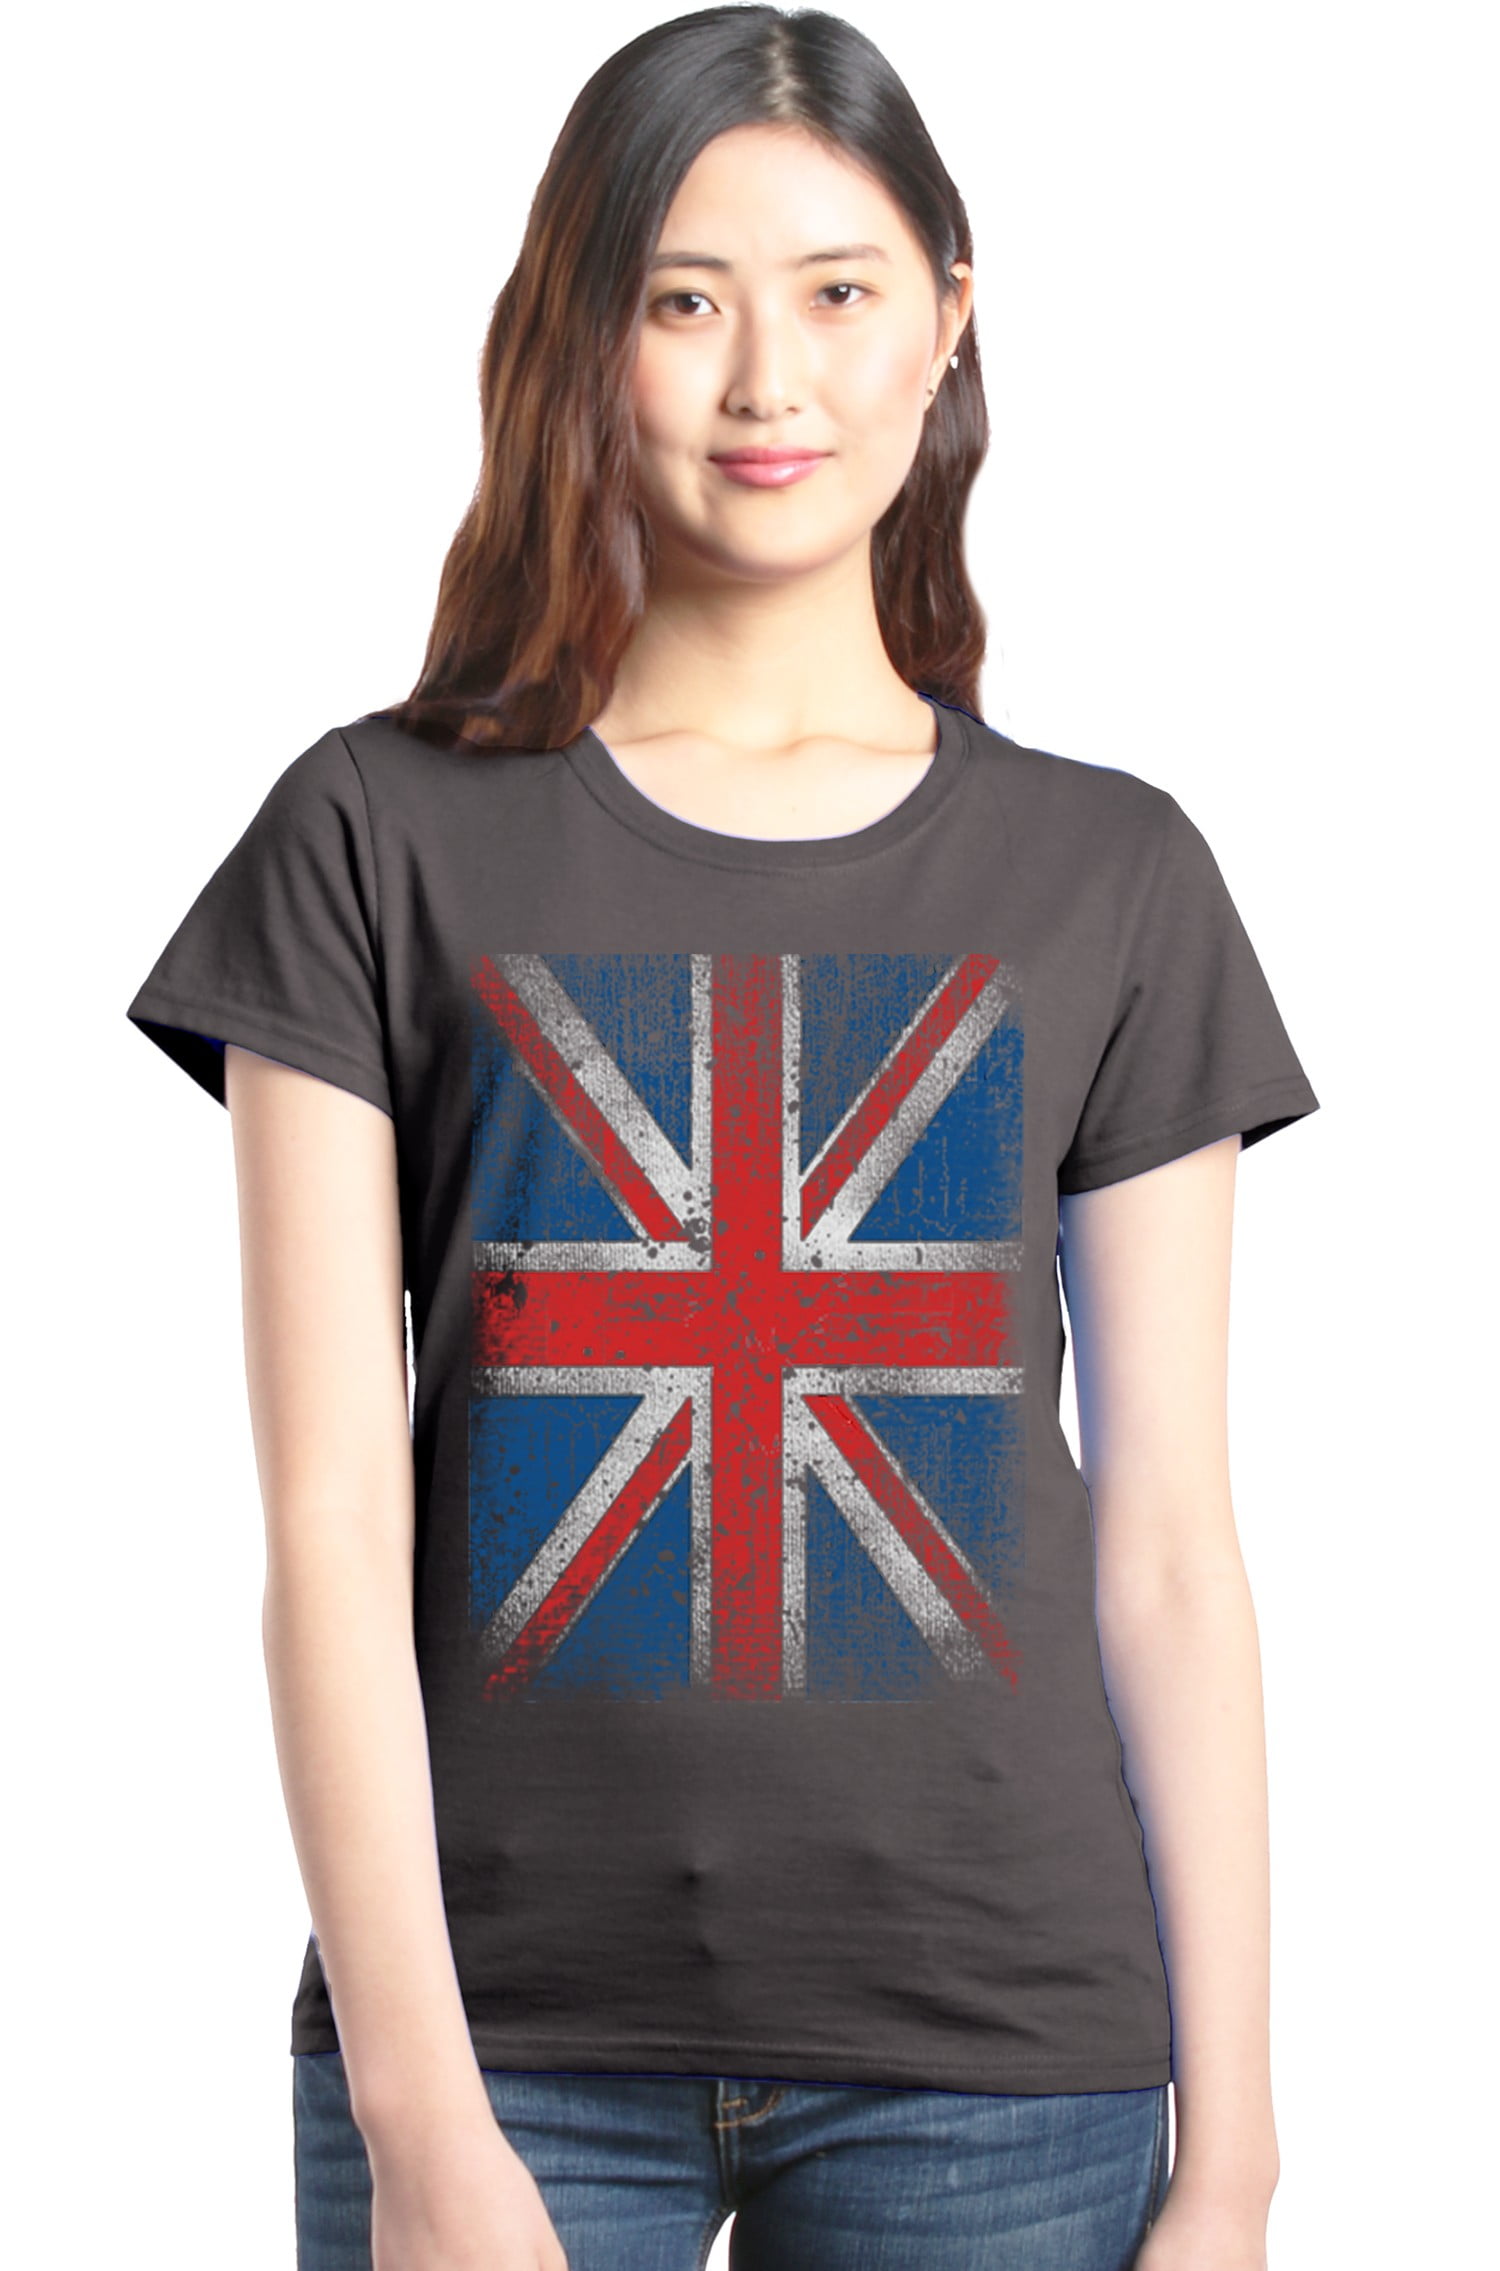 Shop4Ever - Shop4Ever Women's Union Jack British Flag UK Graphic T ...